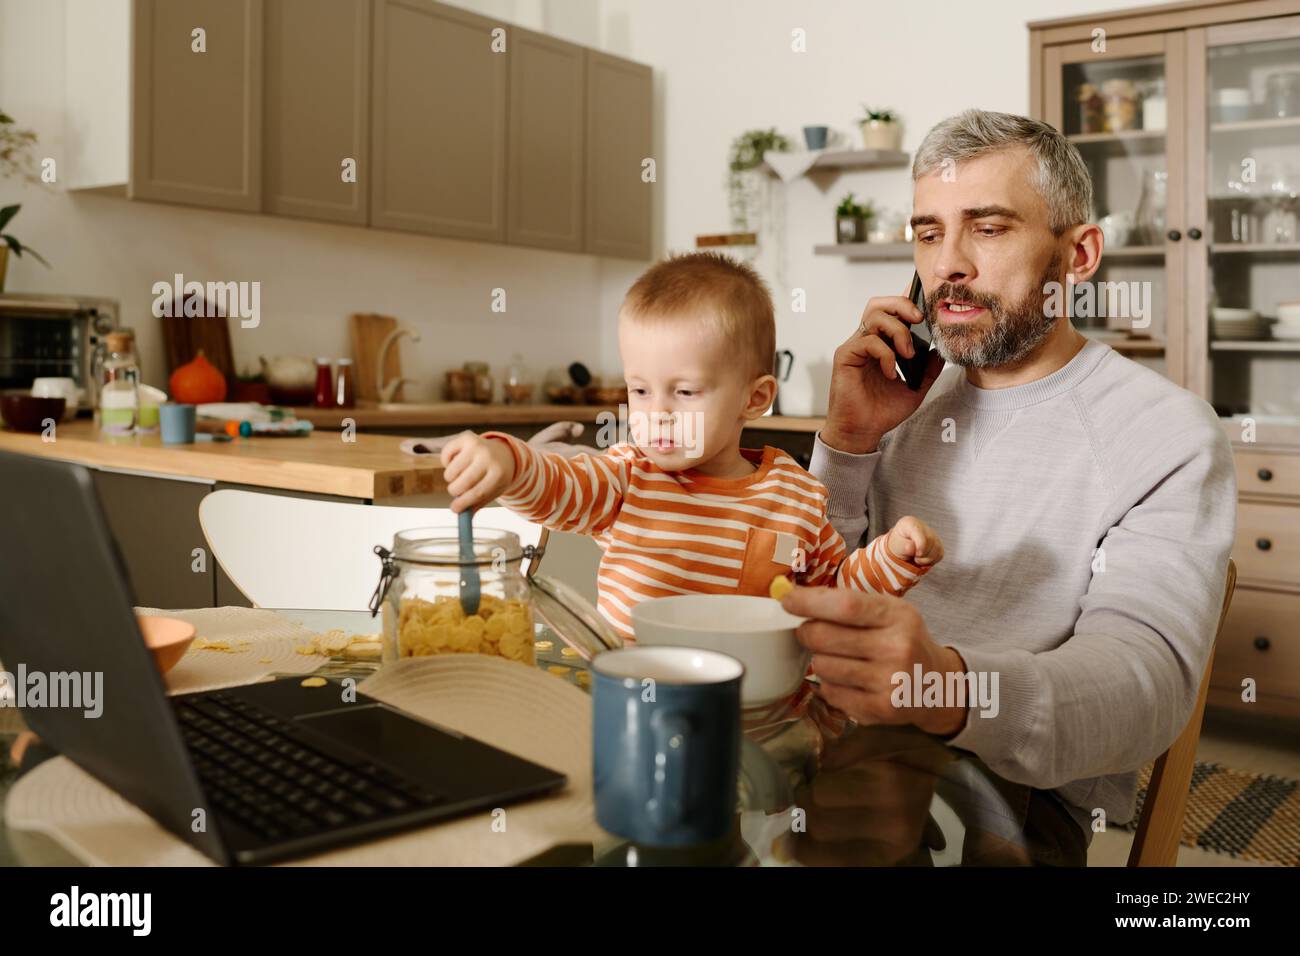 Selbstbewusster, reifer Geschäftsmann mit einem kleinen Sohn auf den Knien, der mit einem Kollegen oder einem Untergebenen auf dem Smartphone am Küchentisch spricht Stockfoto